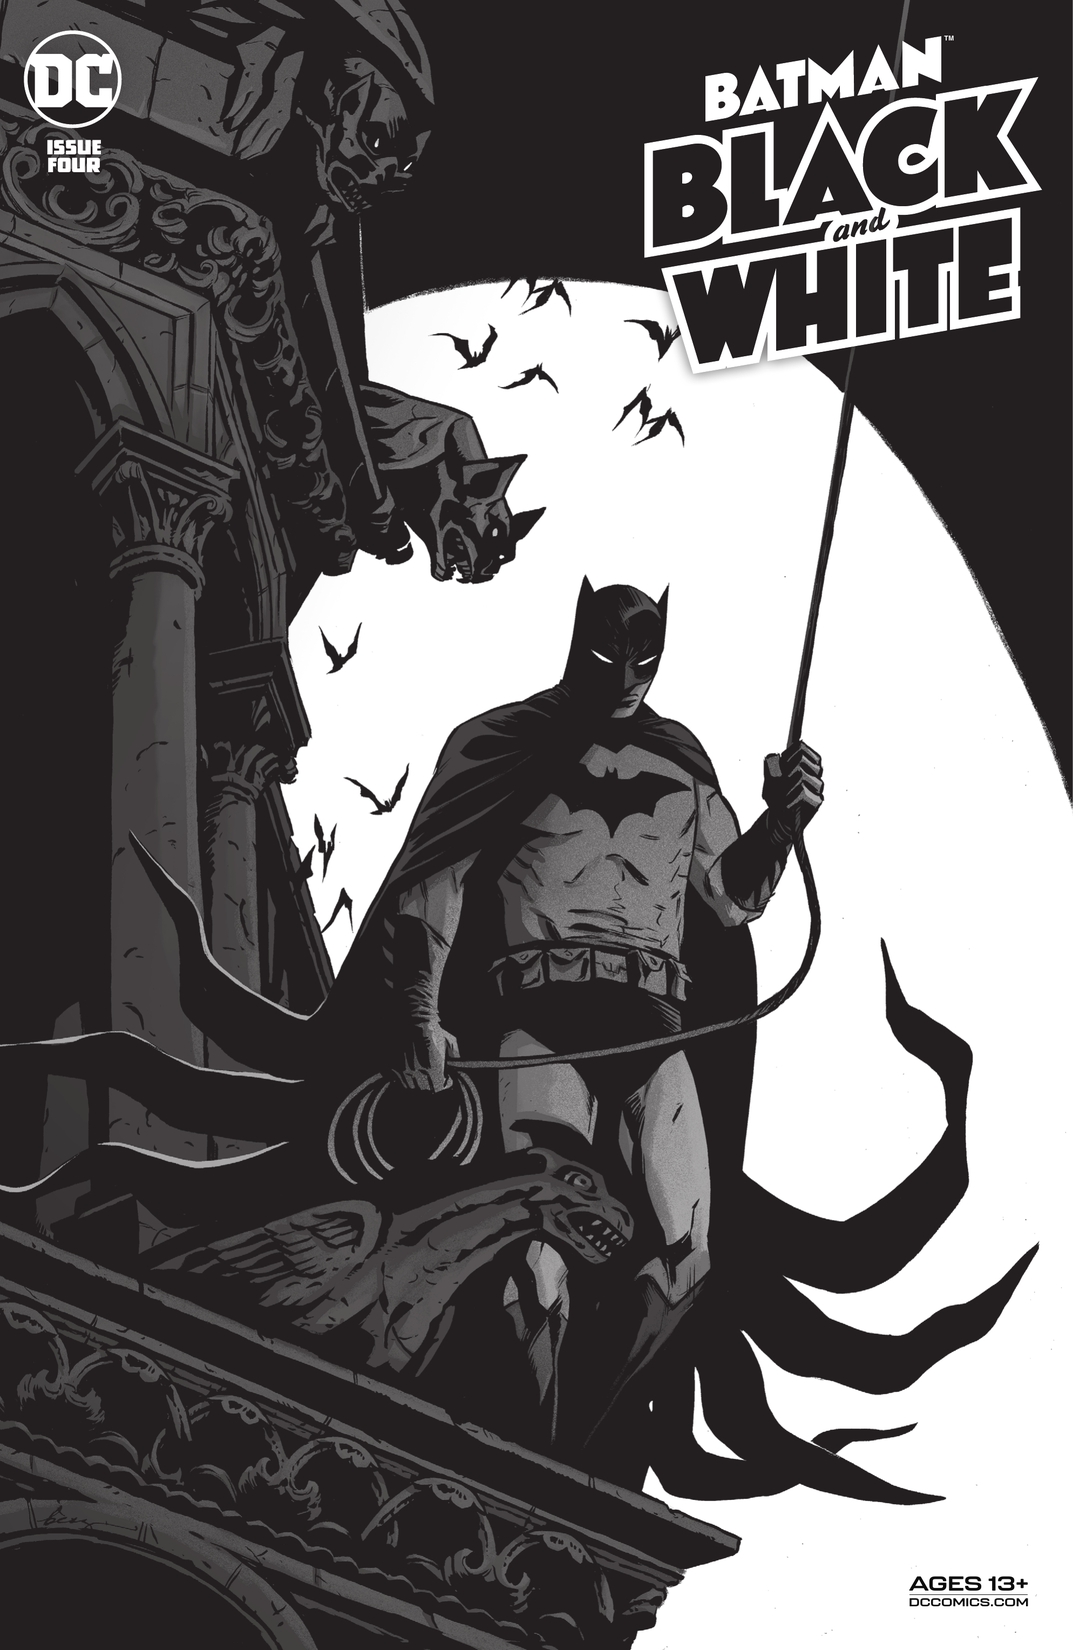 Batman Black & White (2020-) #4 preview images